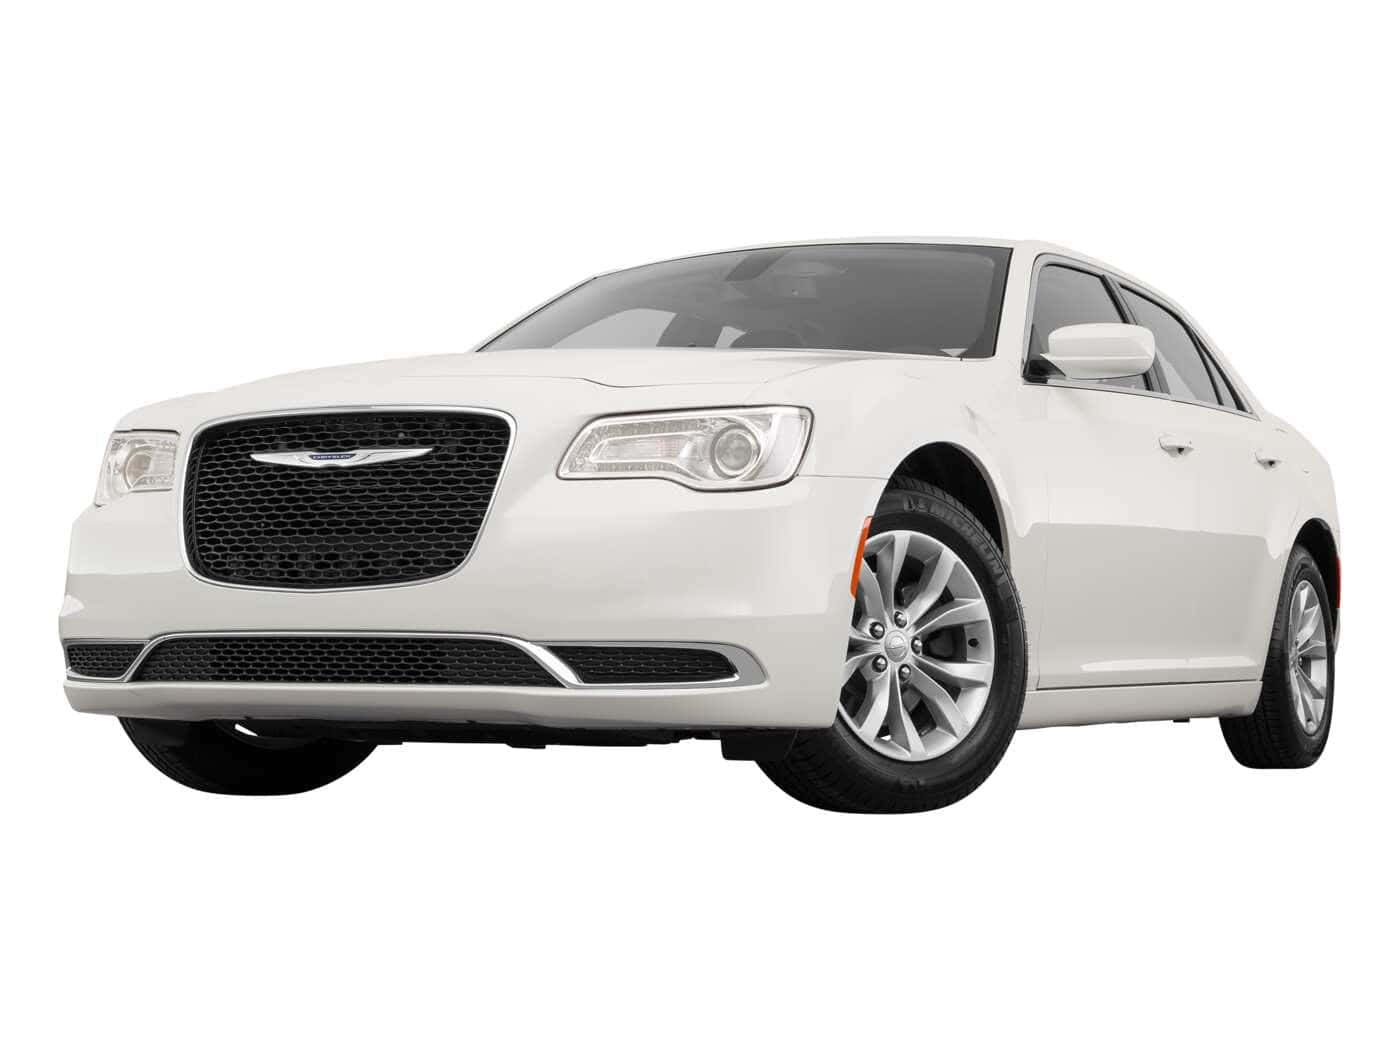 A White Chrysler 300 Sedan Is Shown